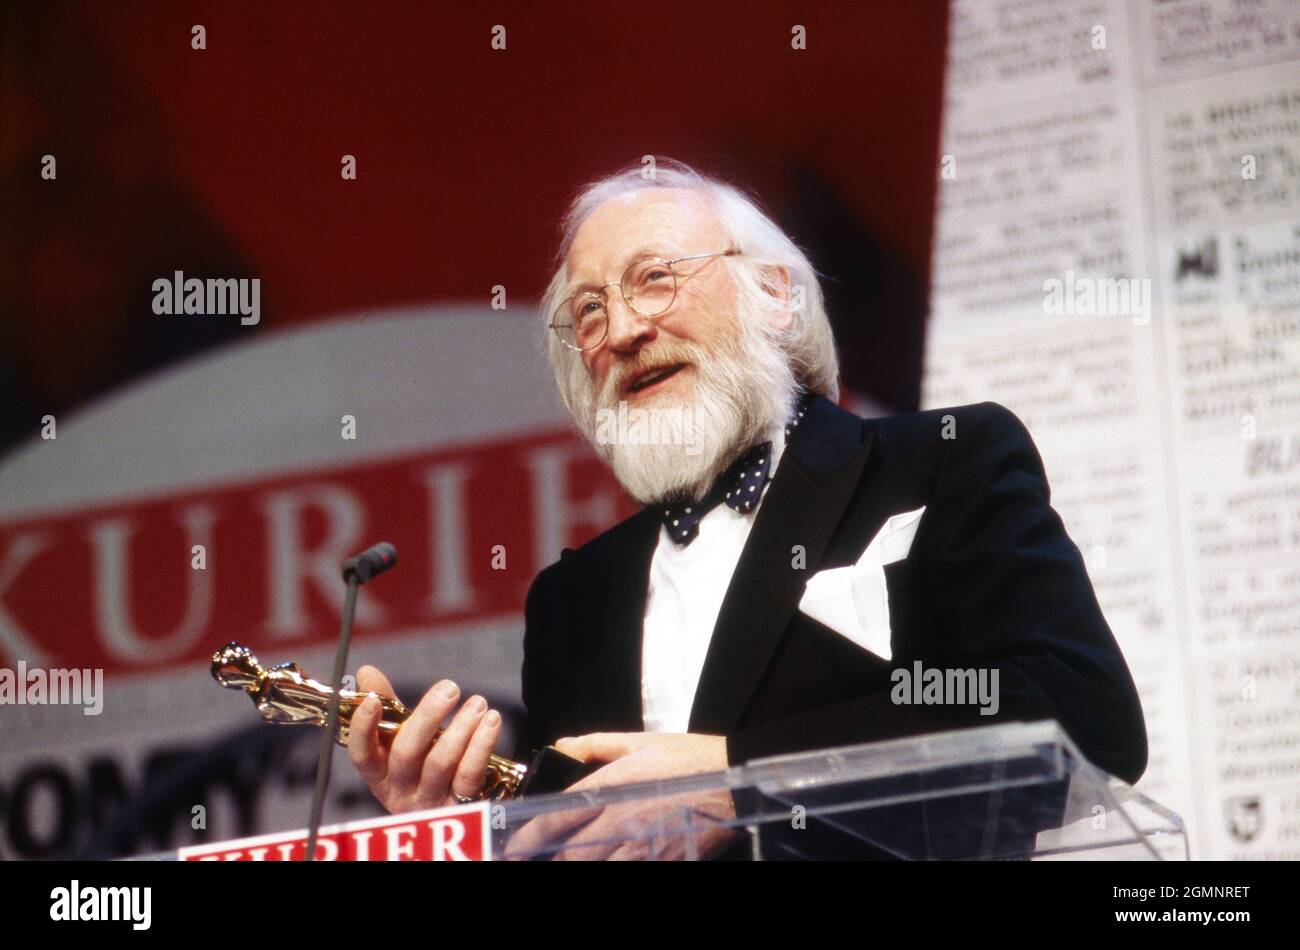 Karl Merkatz, österreichischer Schauspieler, bei einer Preisverleihung, Österreich um 1995. Austrian actor Karl Merkatz at an awarding ceremony, Austria around 1995. Stock Photo